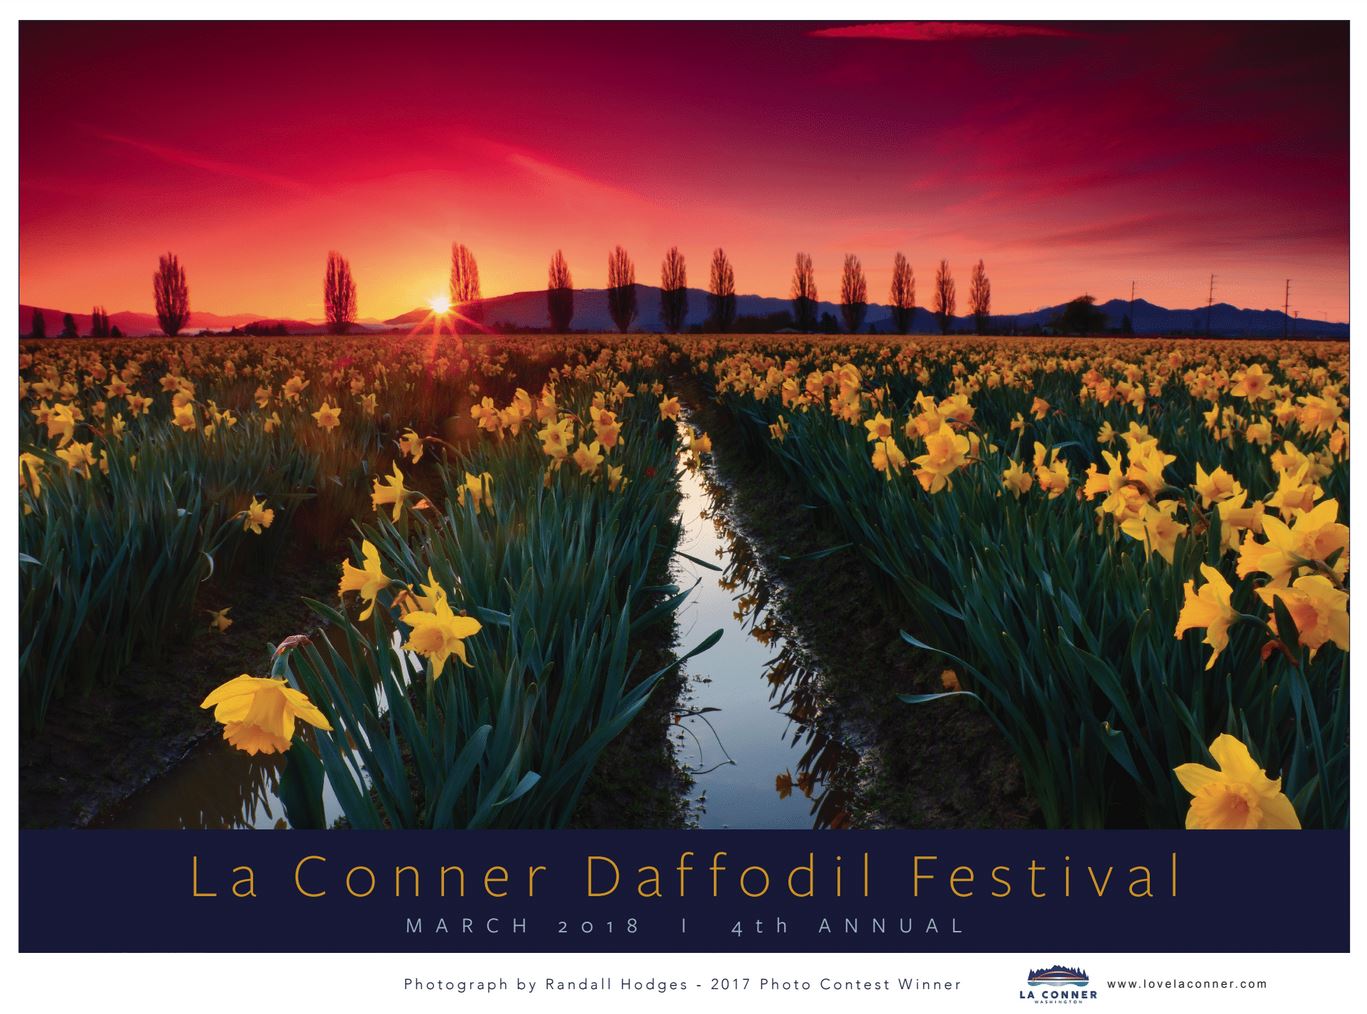 La Conner Daffodil Festival 2018